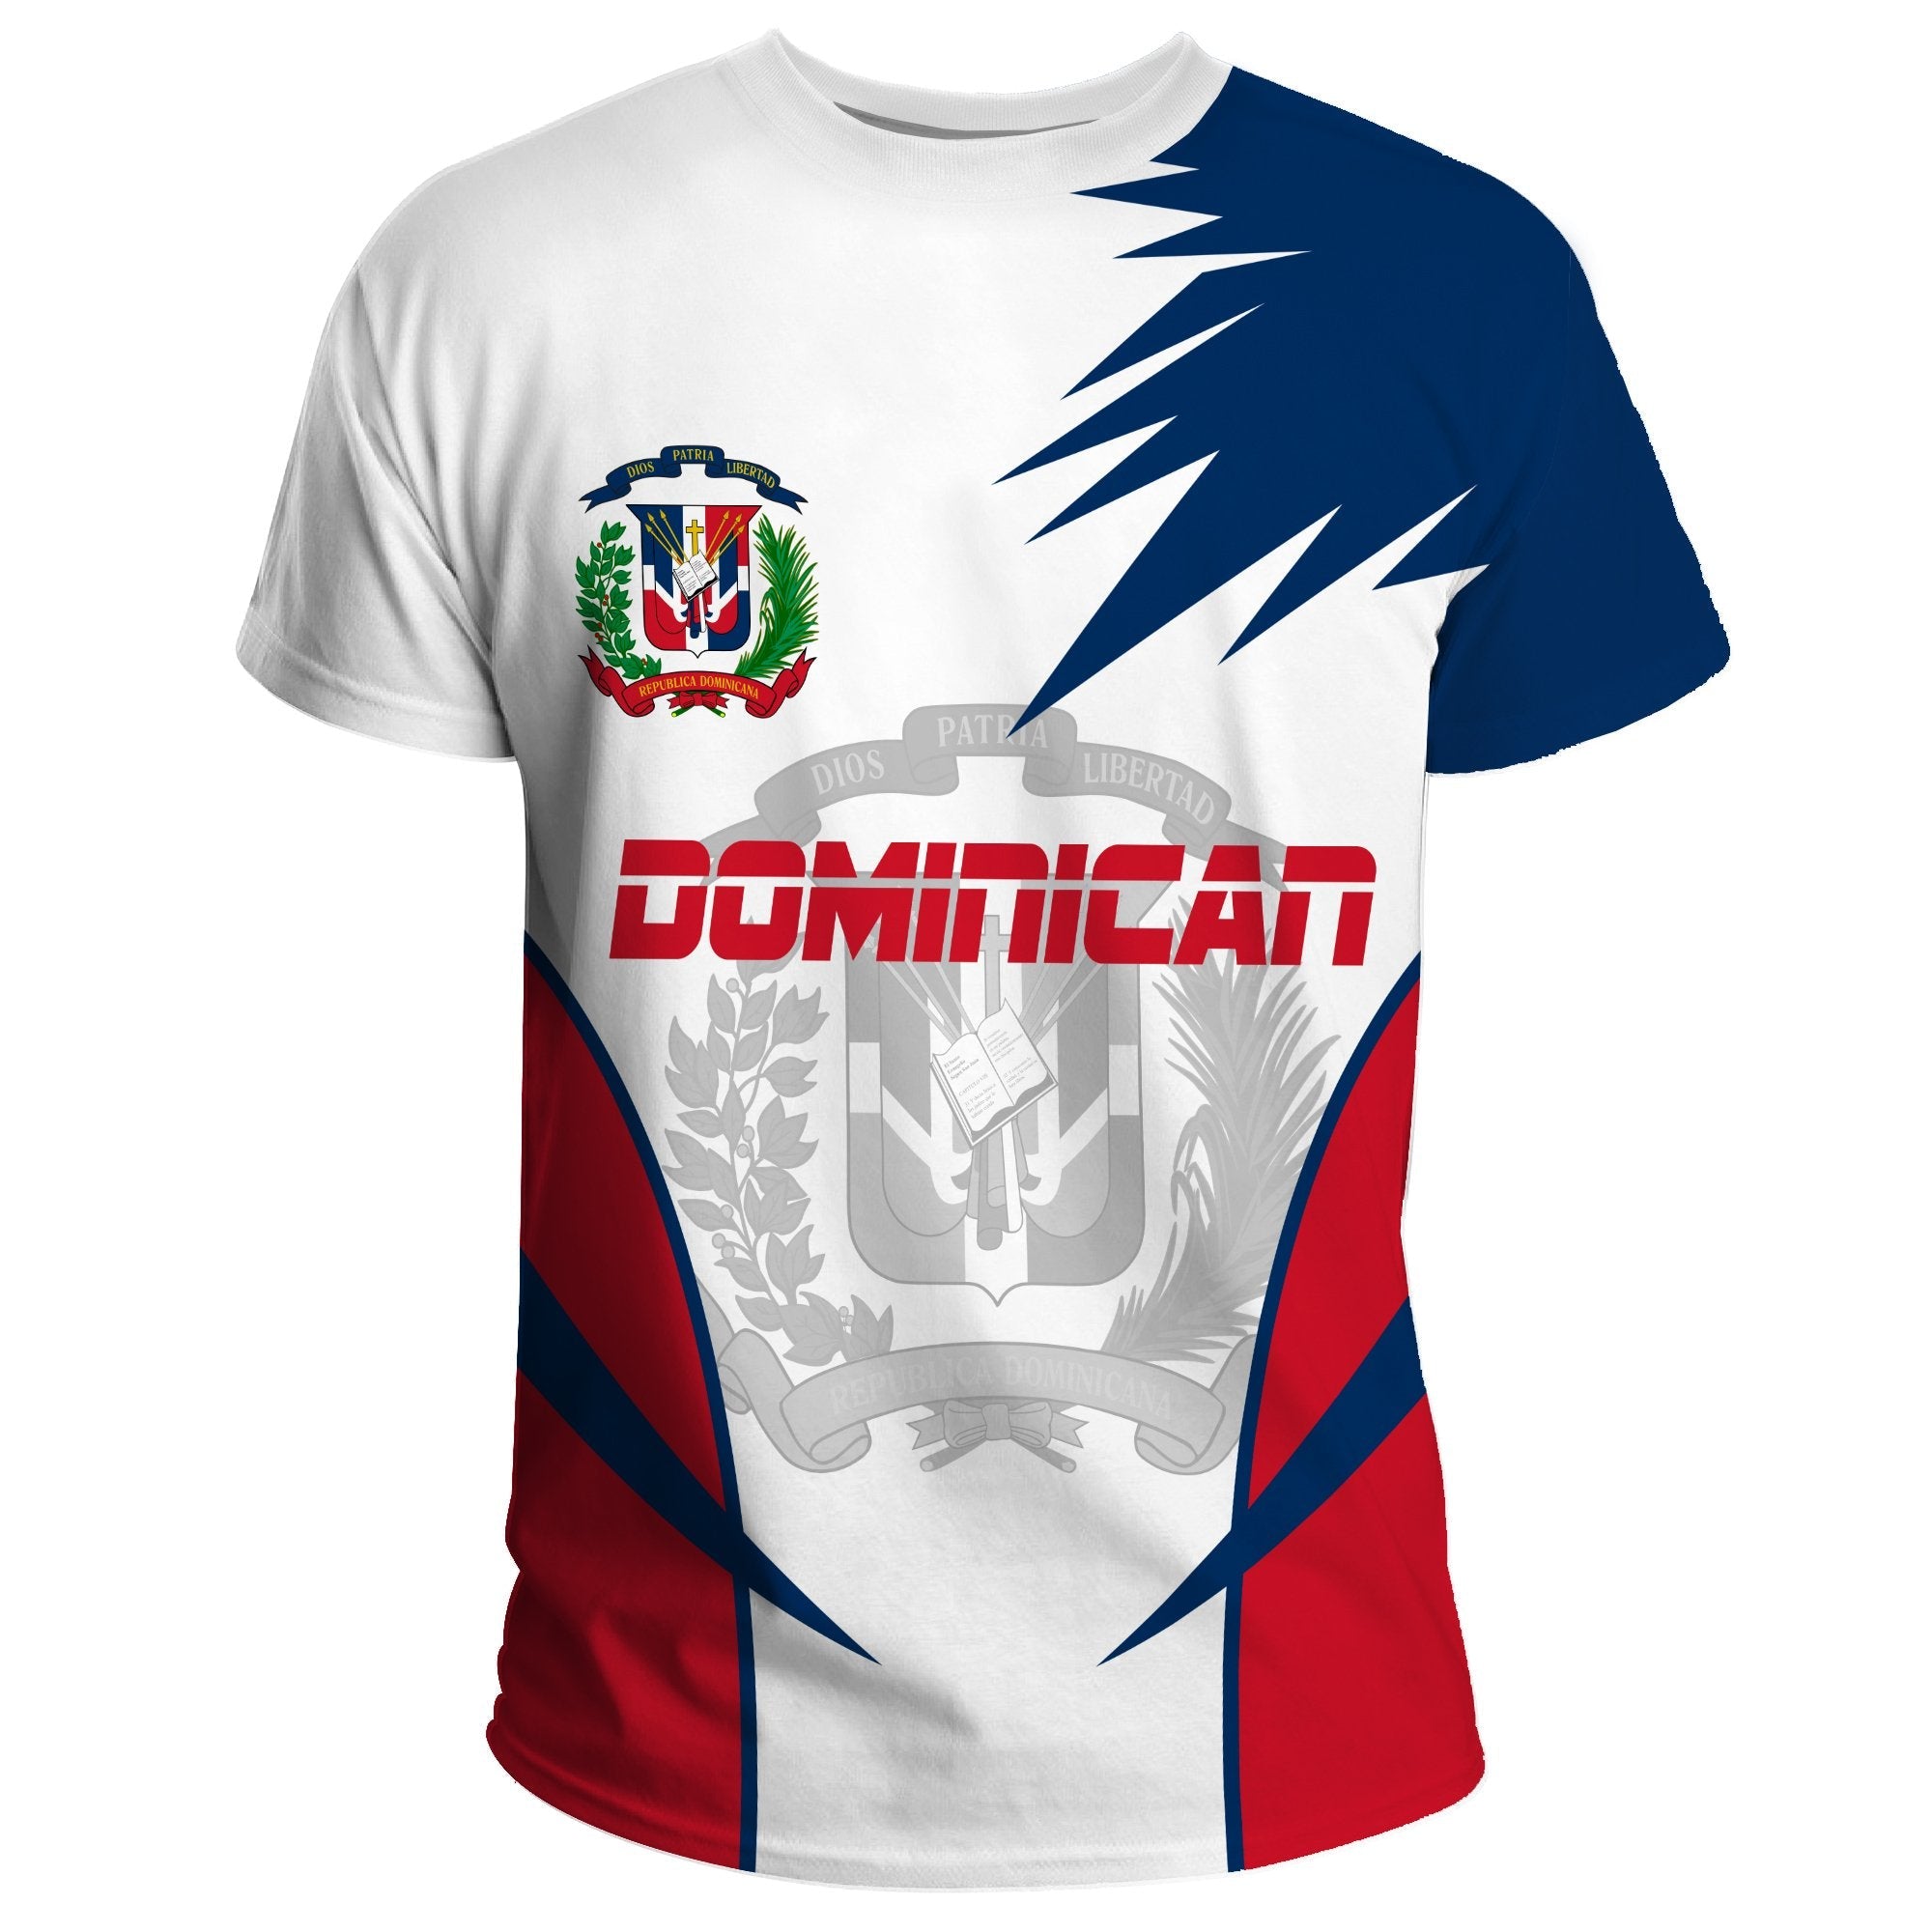 dominican-republic-t-shirt-active